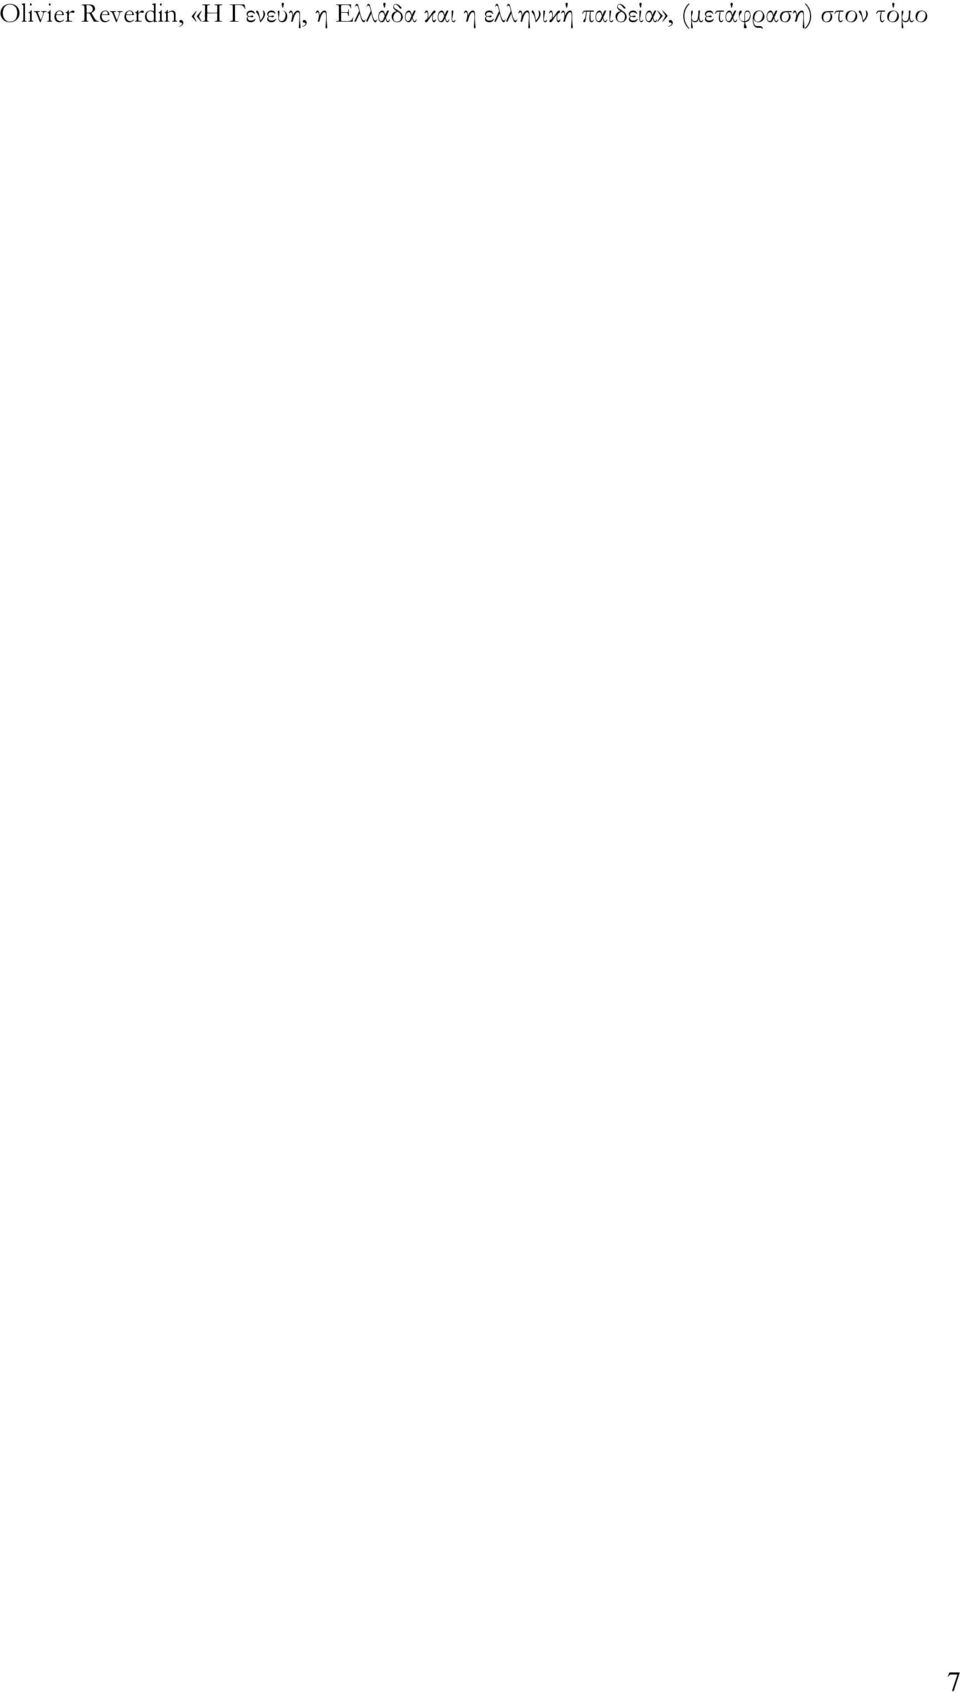 Μακριδάκη Η δεξιά τσέπη του ράσου), Νέα Εστία, τχ.1824, 2009 «Ρέας Γαλανάκη, Φωτιές του Ιούδα, στάχτες του Οιδίποδα», Κ περιοδικό κριτικής λογοτεχνίας και τεχνών, τχ.